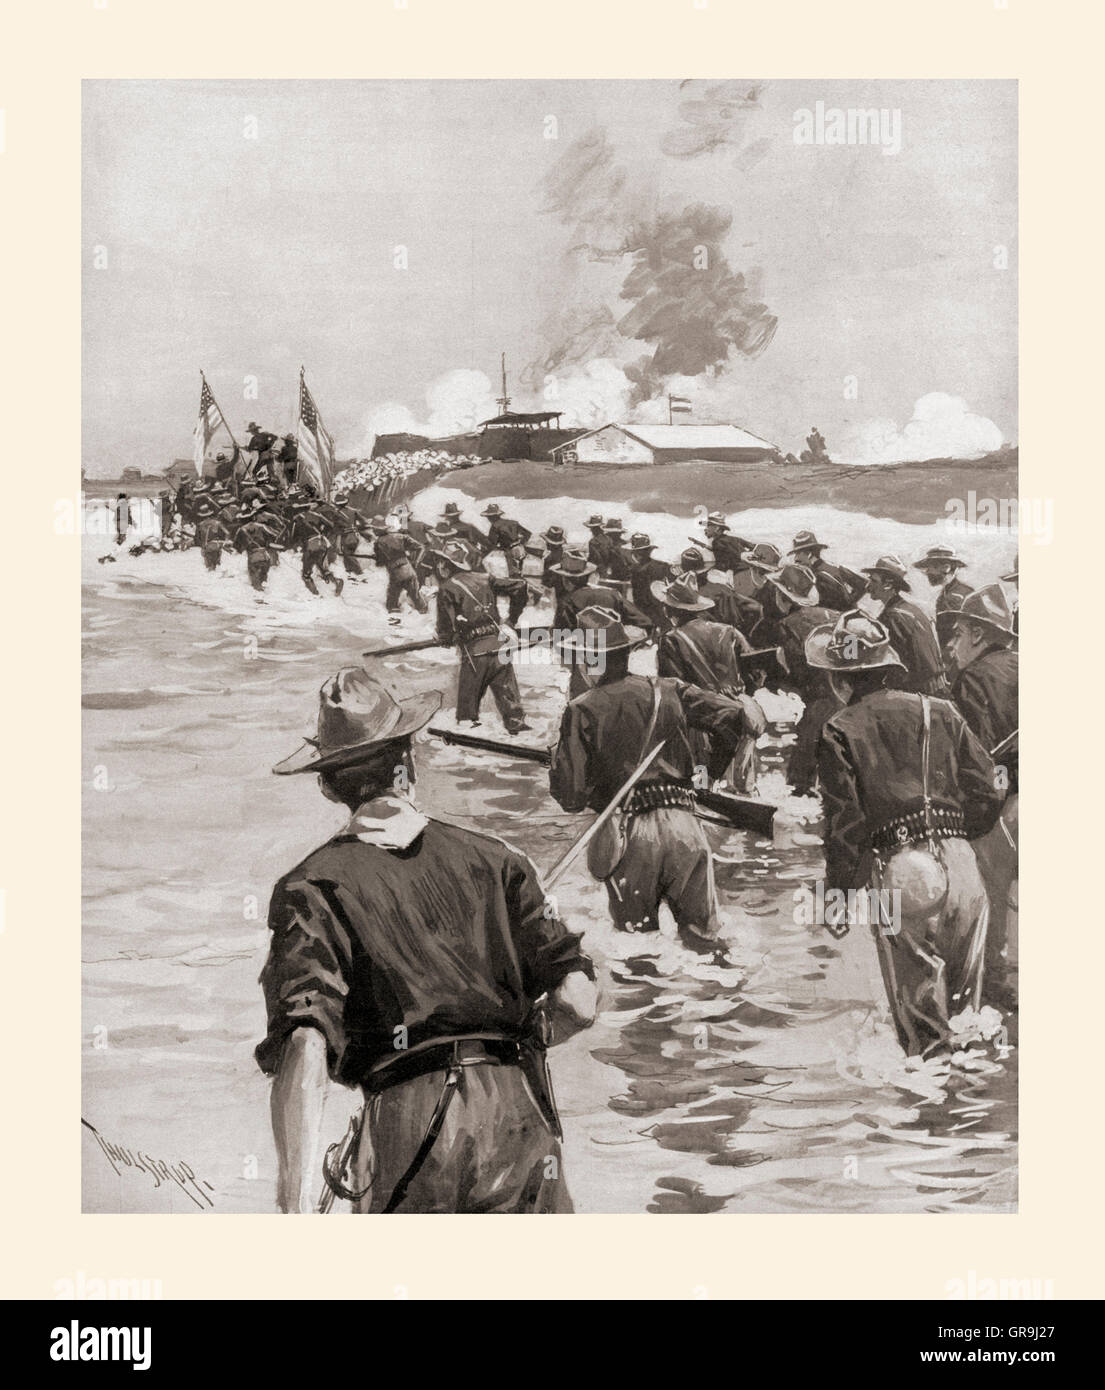 Der Angriff auf Fort San Antonio Abad in der Schlacht von Manila während des Spanisch-Amerikanischen Krieges 1898. Stockfoto